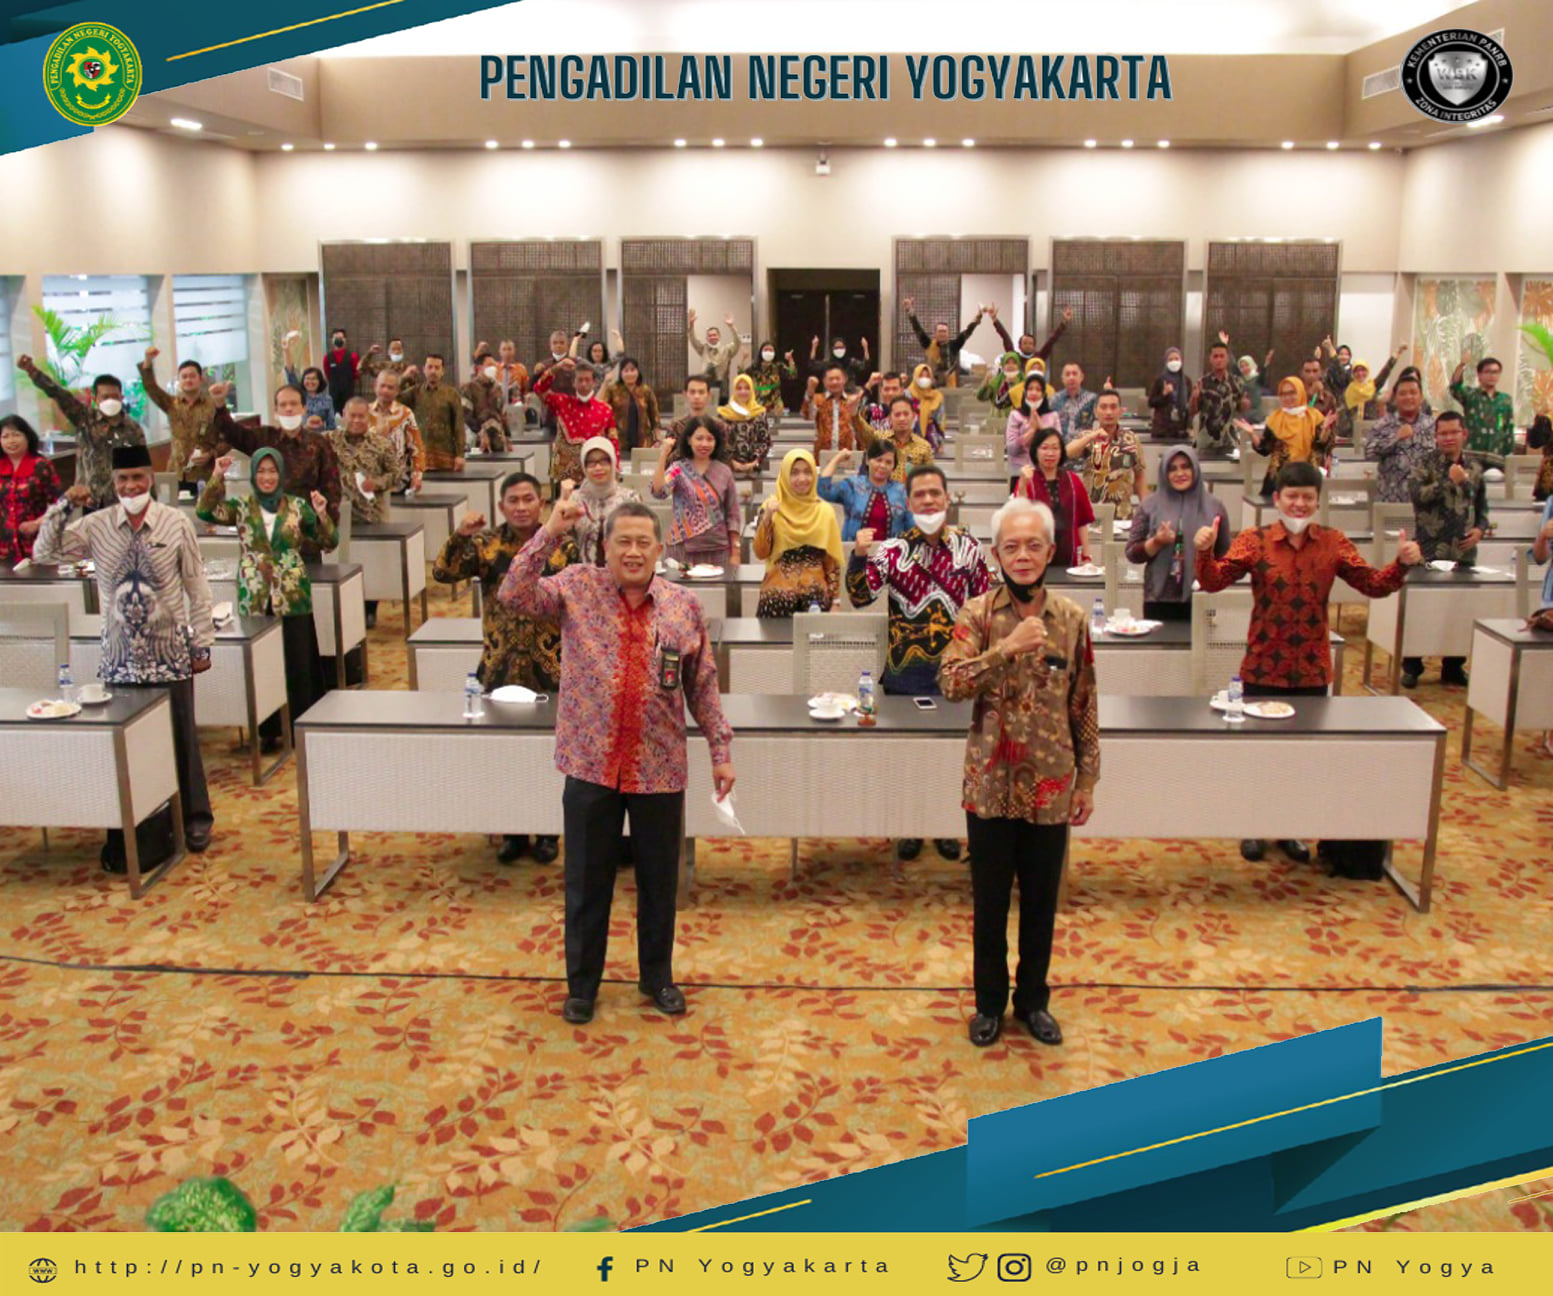 Bimbingan Teknis Bidang Kepaniteraan dan Kesekretariatan se-Wilayah Pengadilan Tinggi Yogyakarta